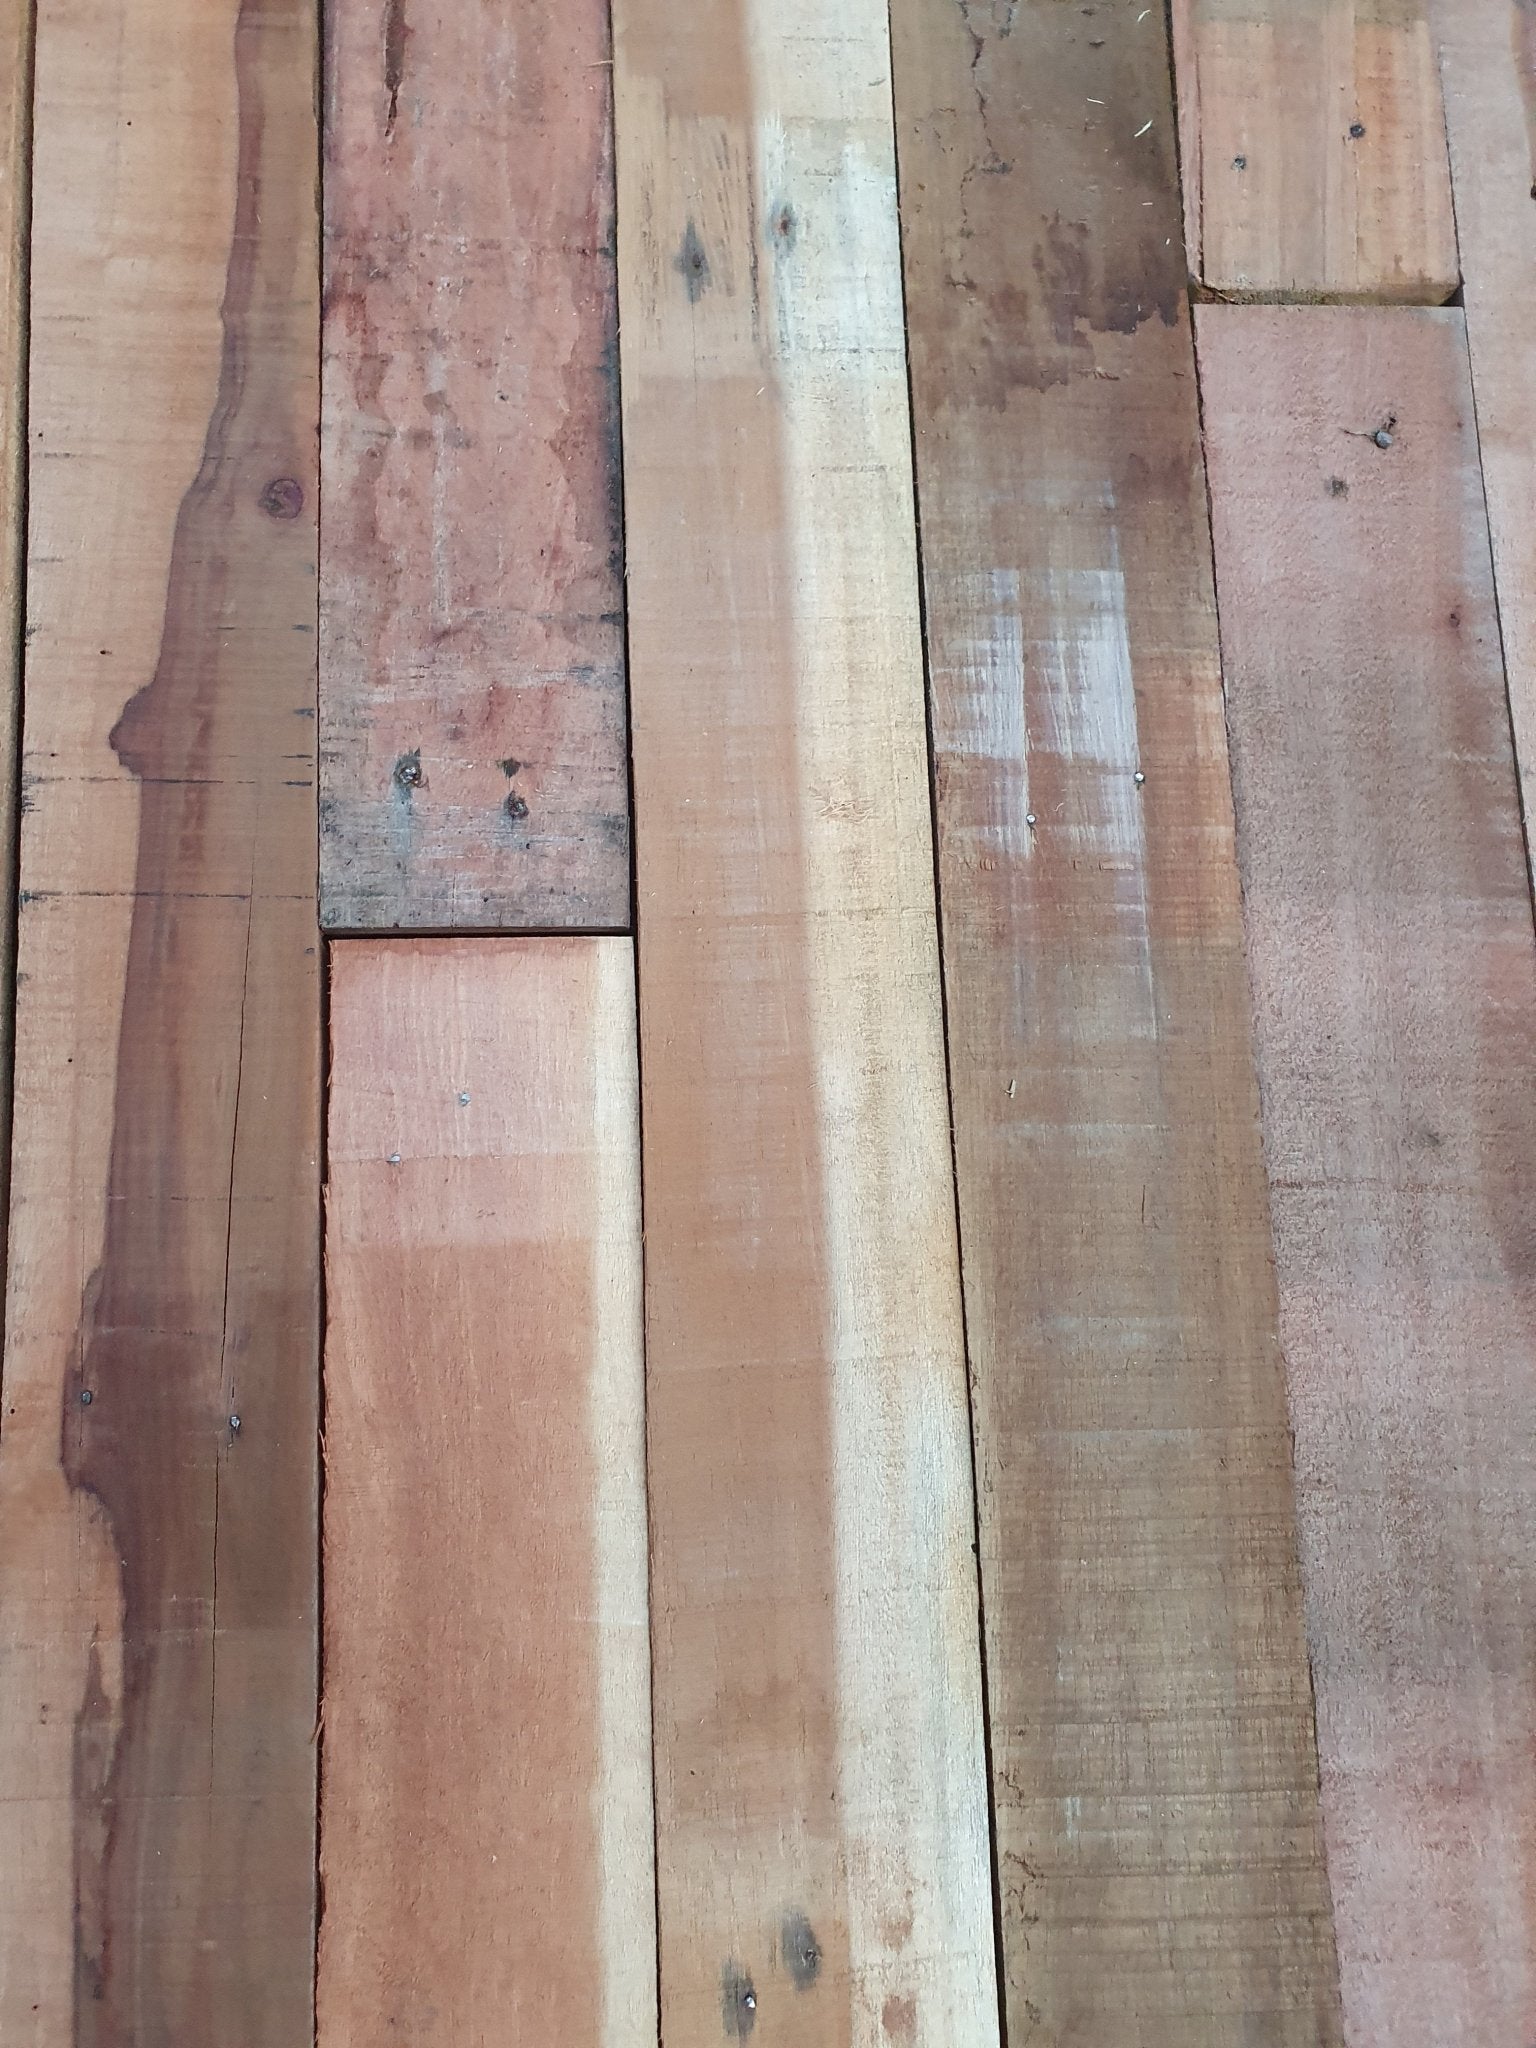 Duurzaam bouwen met aandacht voor detail: De recupwood planken, zorgvuldig ontnageld en voorbereid voor uw project.